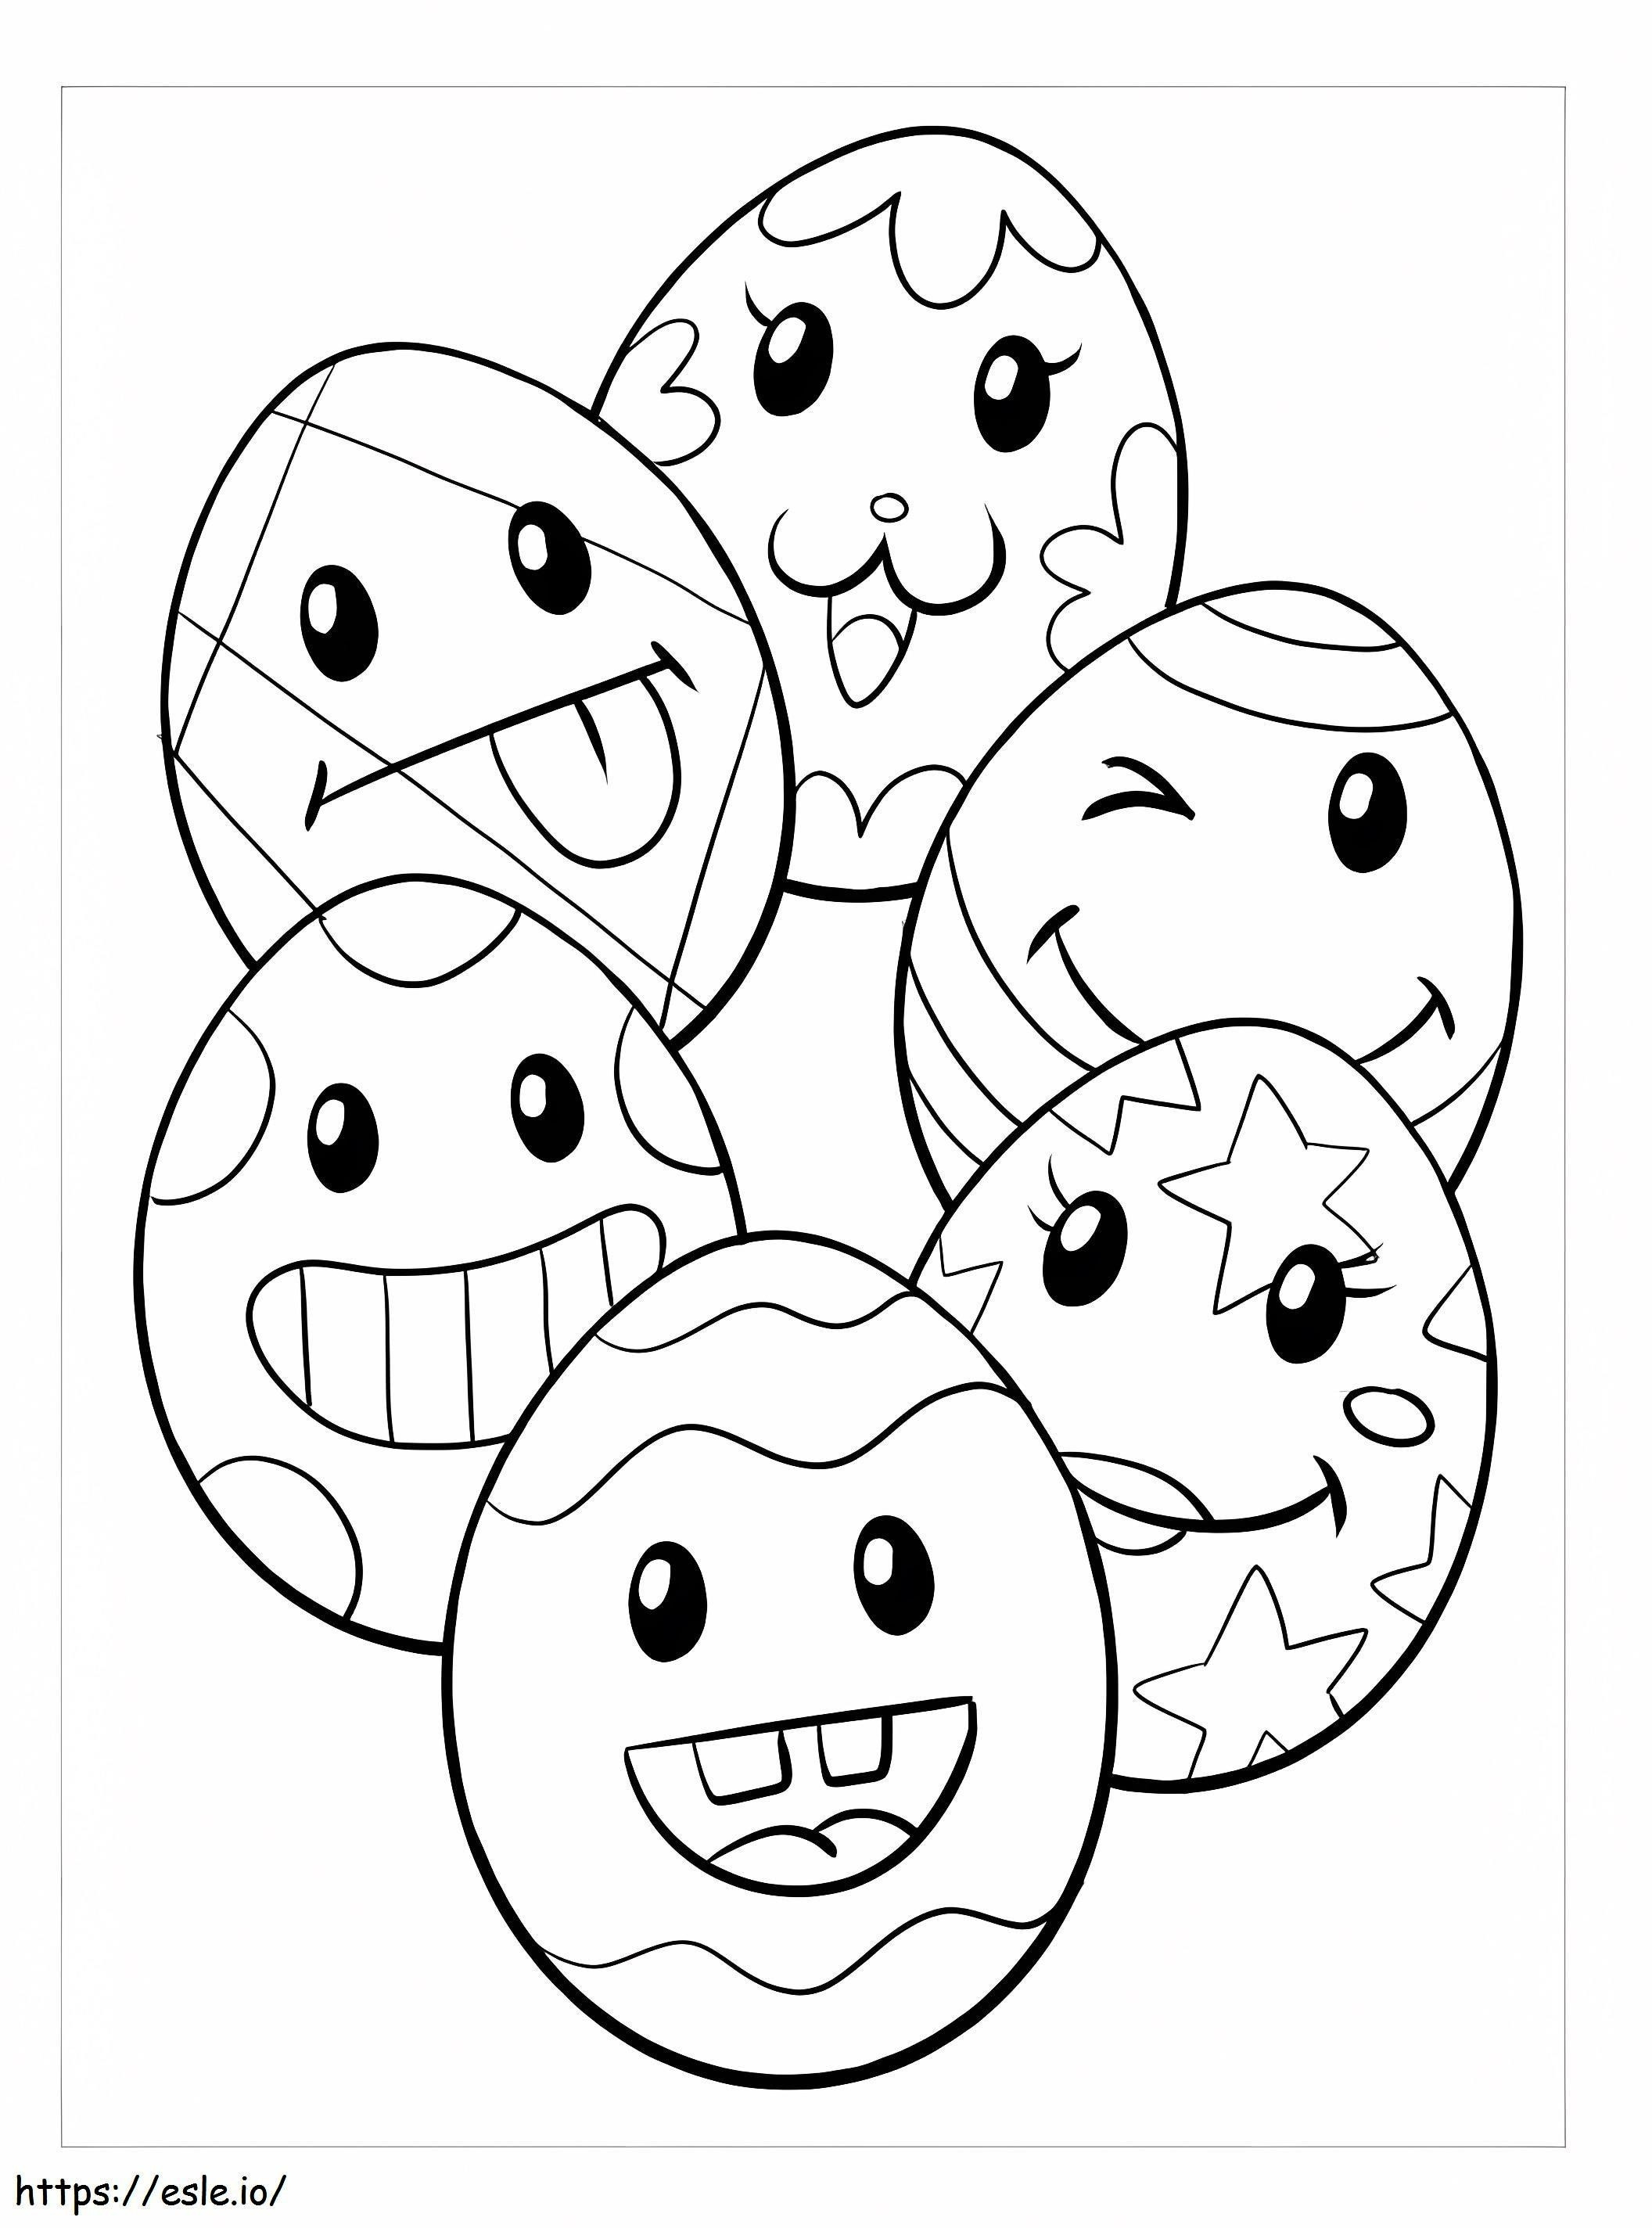 Seis huevos de Pascua de dibujos animados para colorear